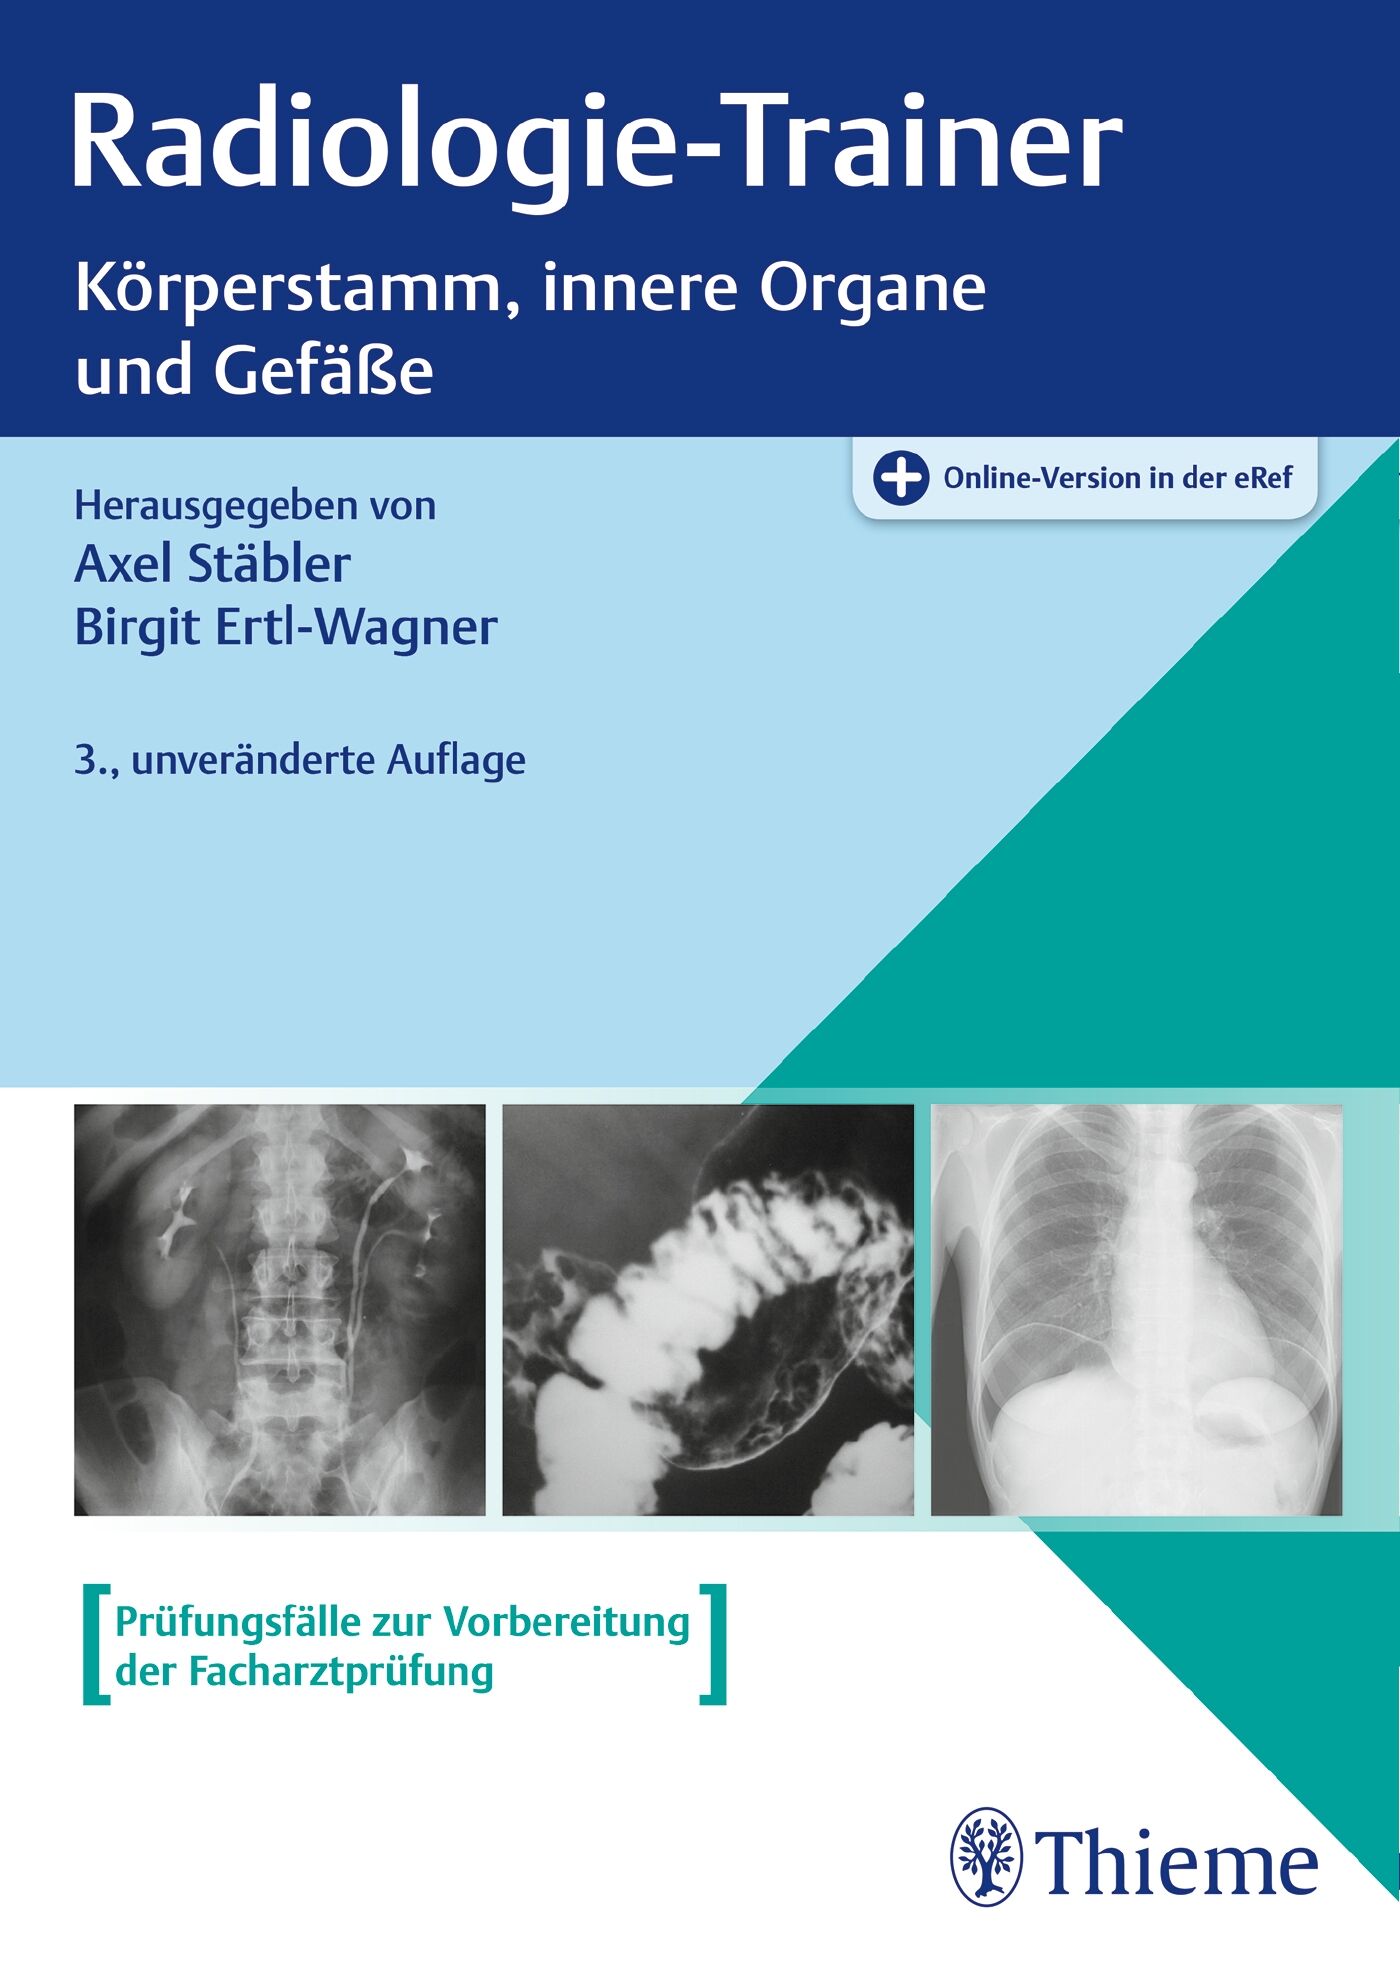 Radiologie-Trainer Körperstamm, innere Organe und Gefäße, 9783132418981